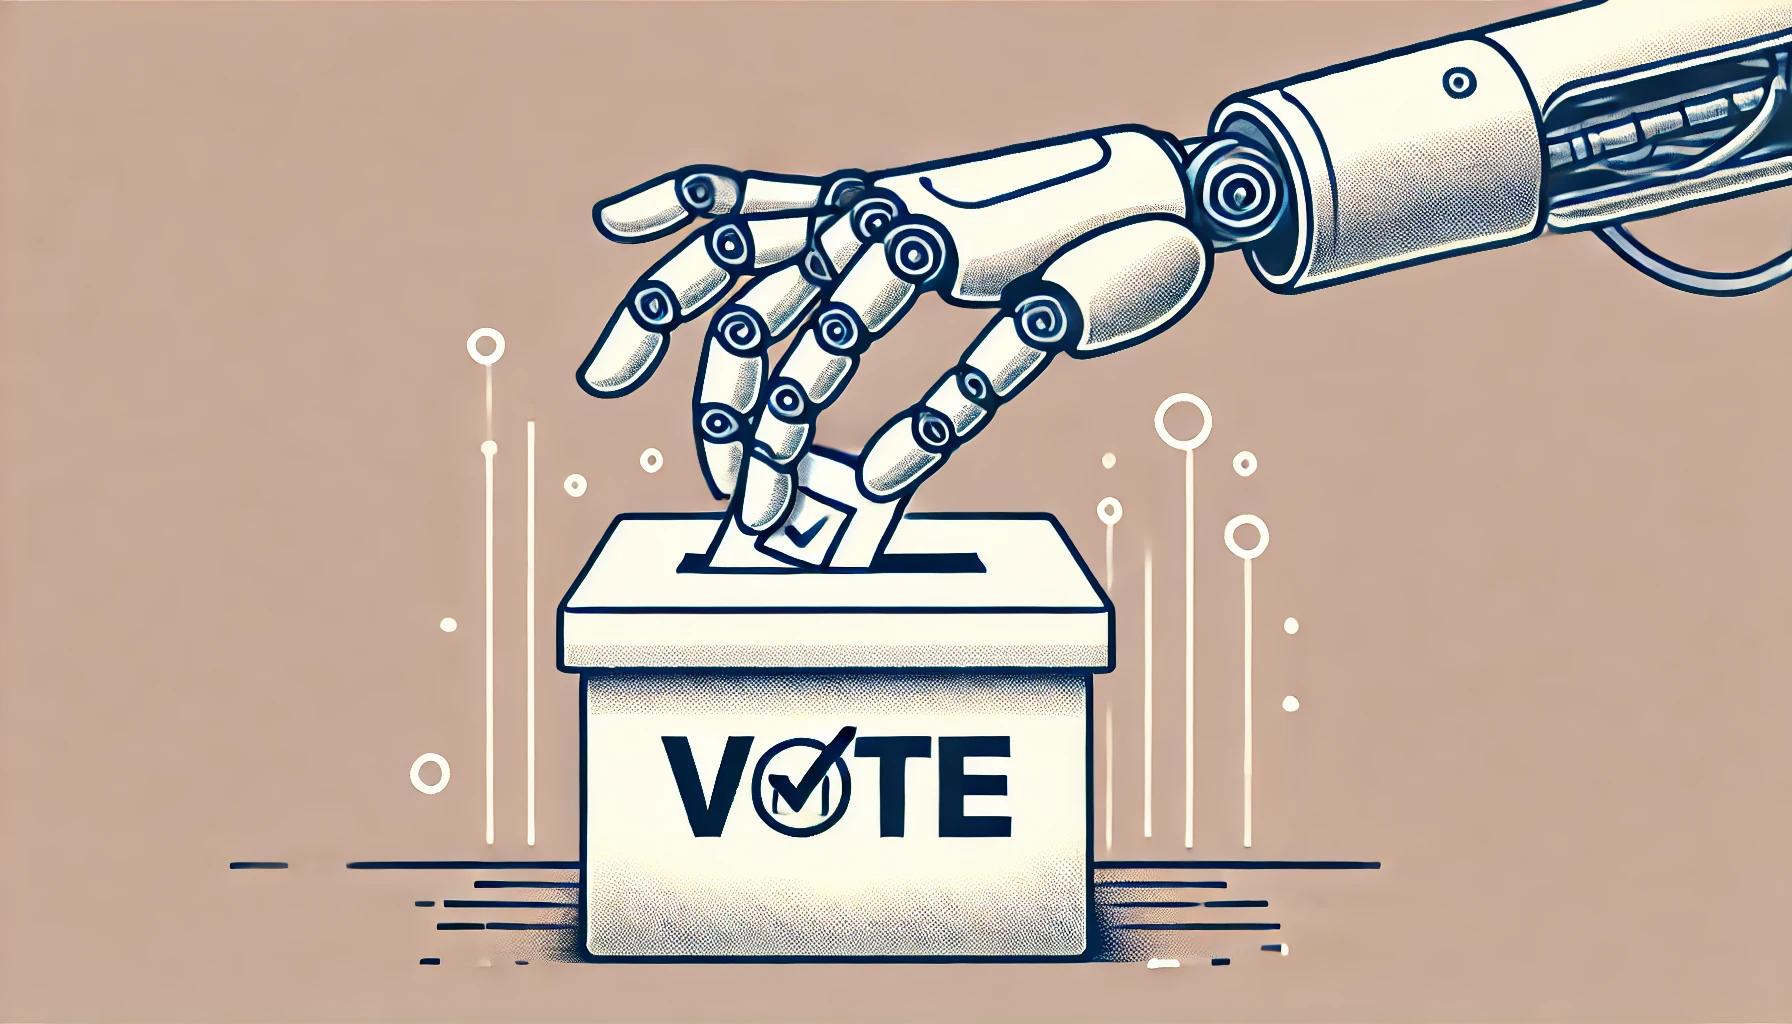 Los gigantes tecnológicos firman un acuerdo para proteger las elecciones de la desinformación con IA